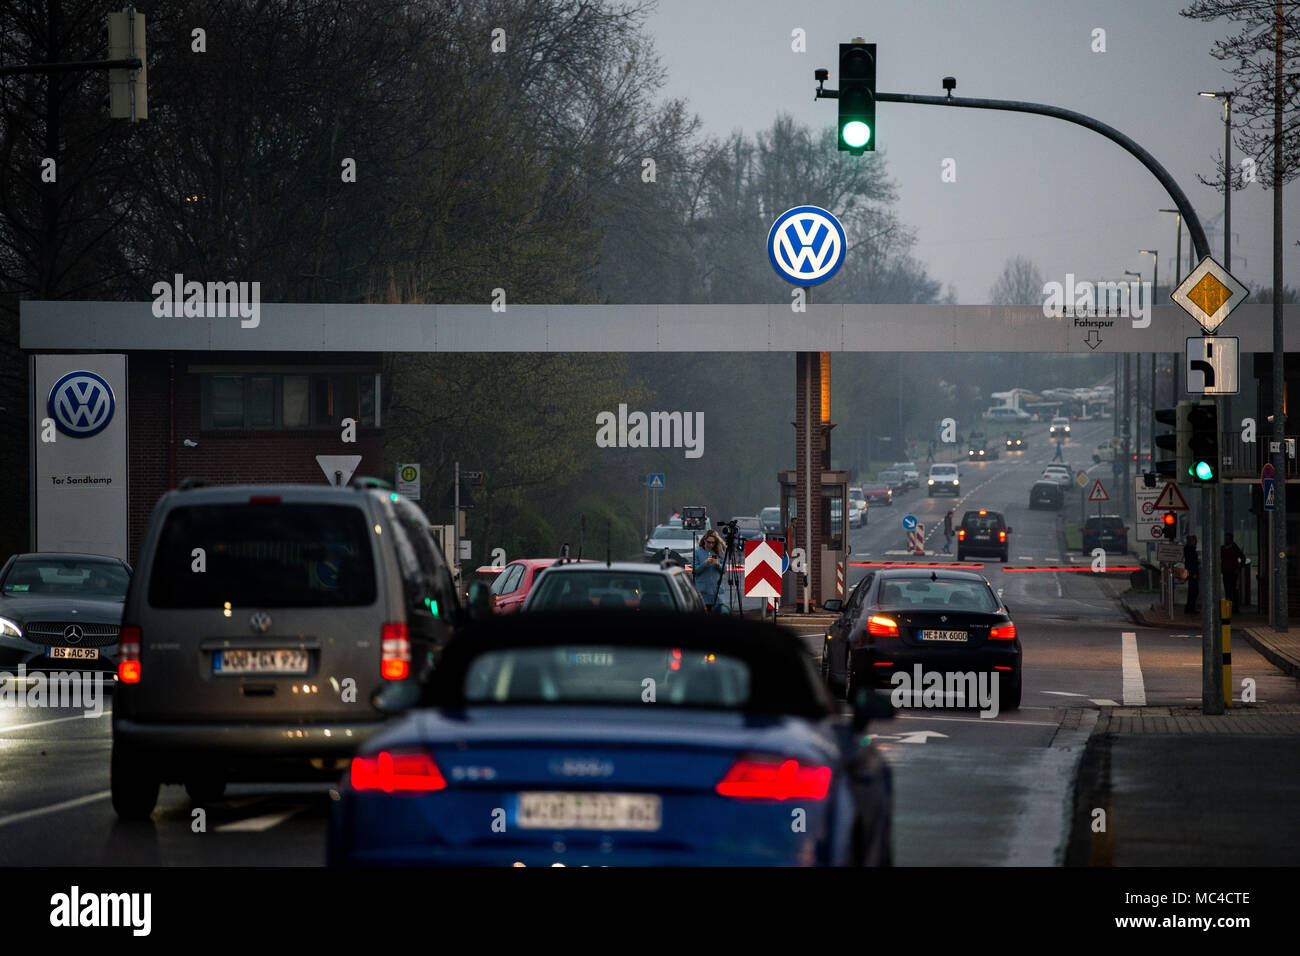 13 aprile 2018, Germania, Wolfsburg: Automobili la guida sul sito di Volkswagen. I risultati del consiglio di amministrazione per quanto riguarda il riorientamento della società verrà presentata questa mattina in occasione di una conferenza stampa. Foto: Swen Pförtner/dpa Foto Stock